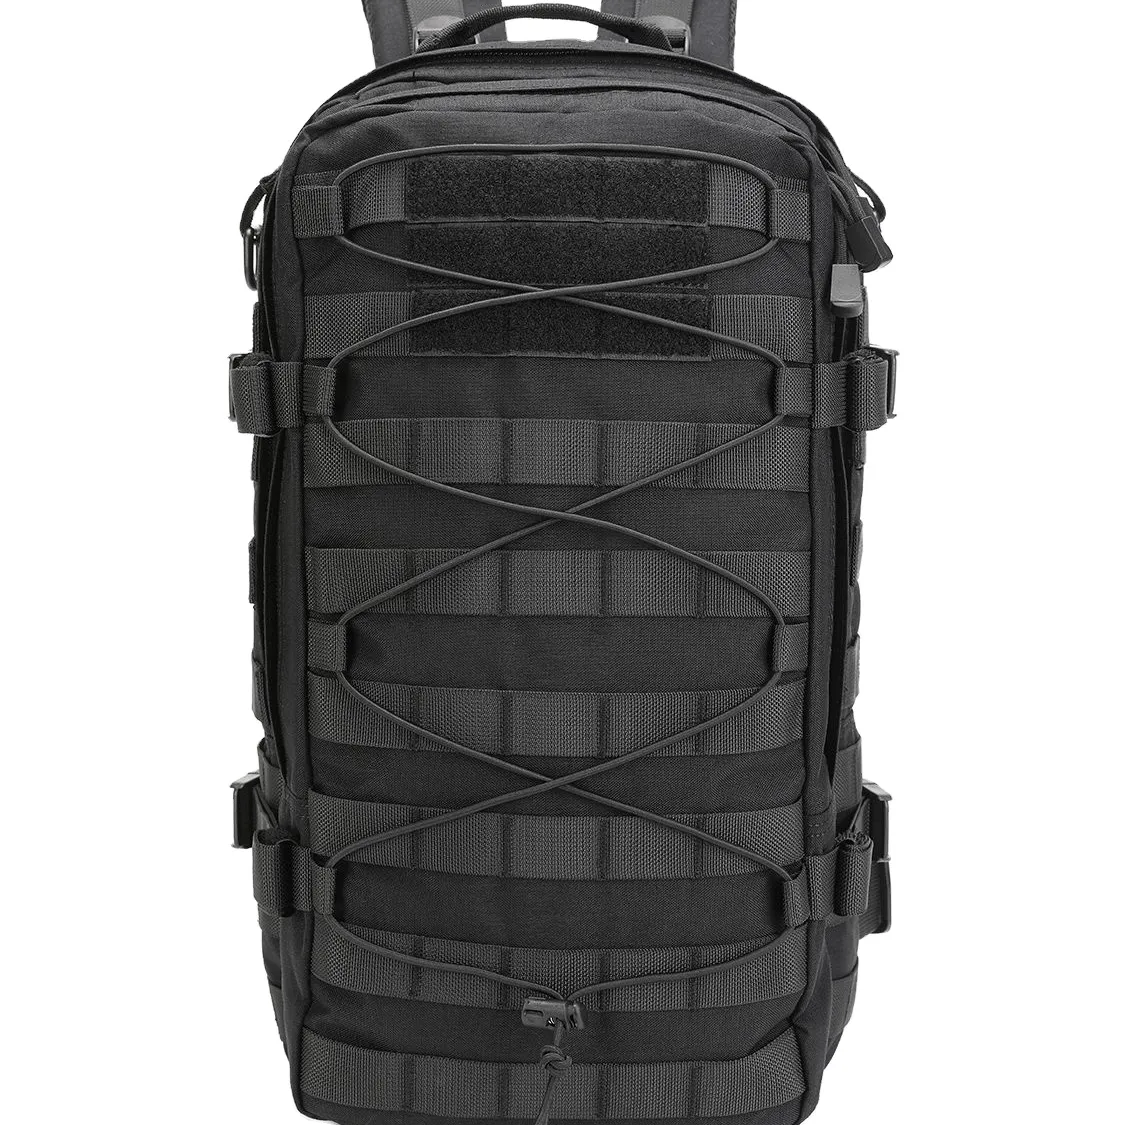 ファルコンアサルト戦術バックパックアウトドアスポーツハイキングバッグ多機能戦術バッグ